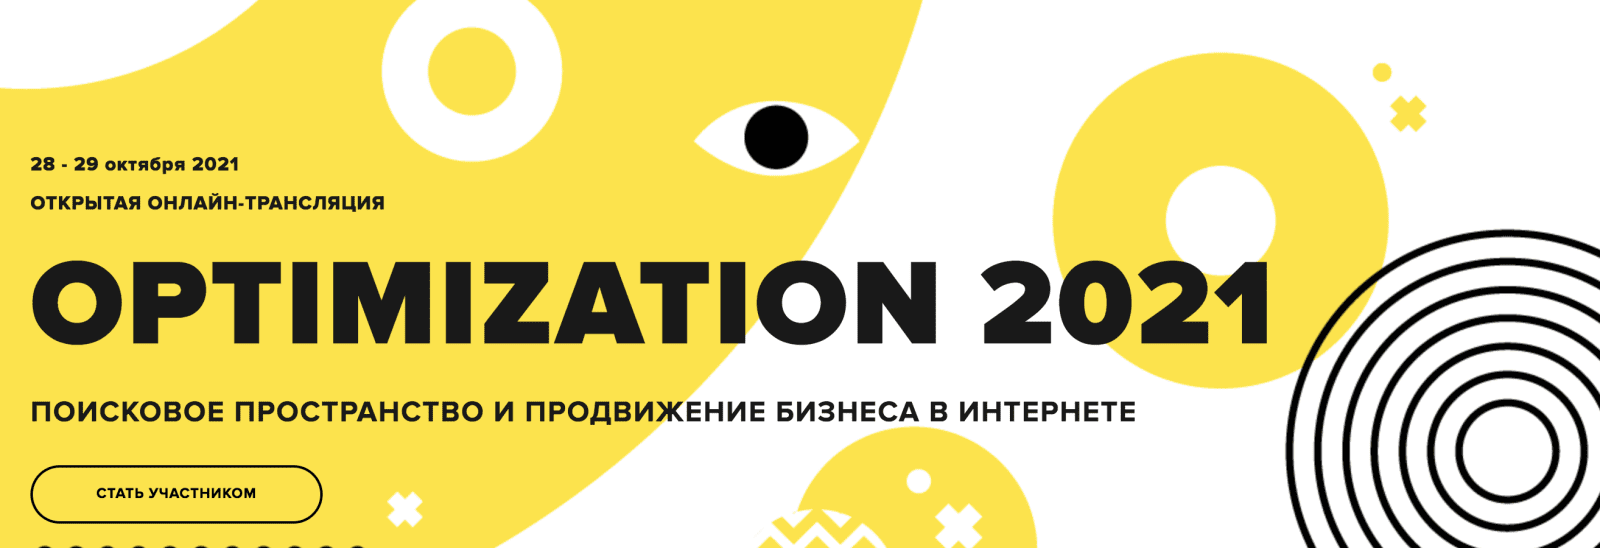 Изображение Optimization 2021 - Конференция по интернет-маркетингу (2021) в посте 250487